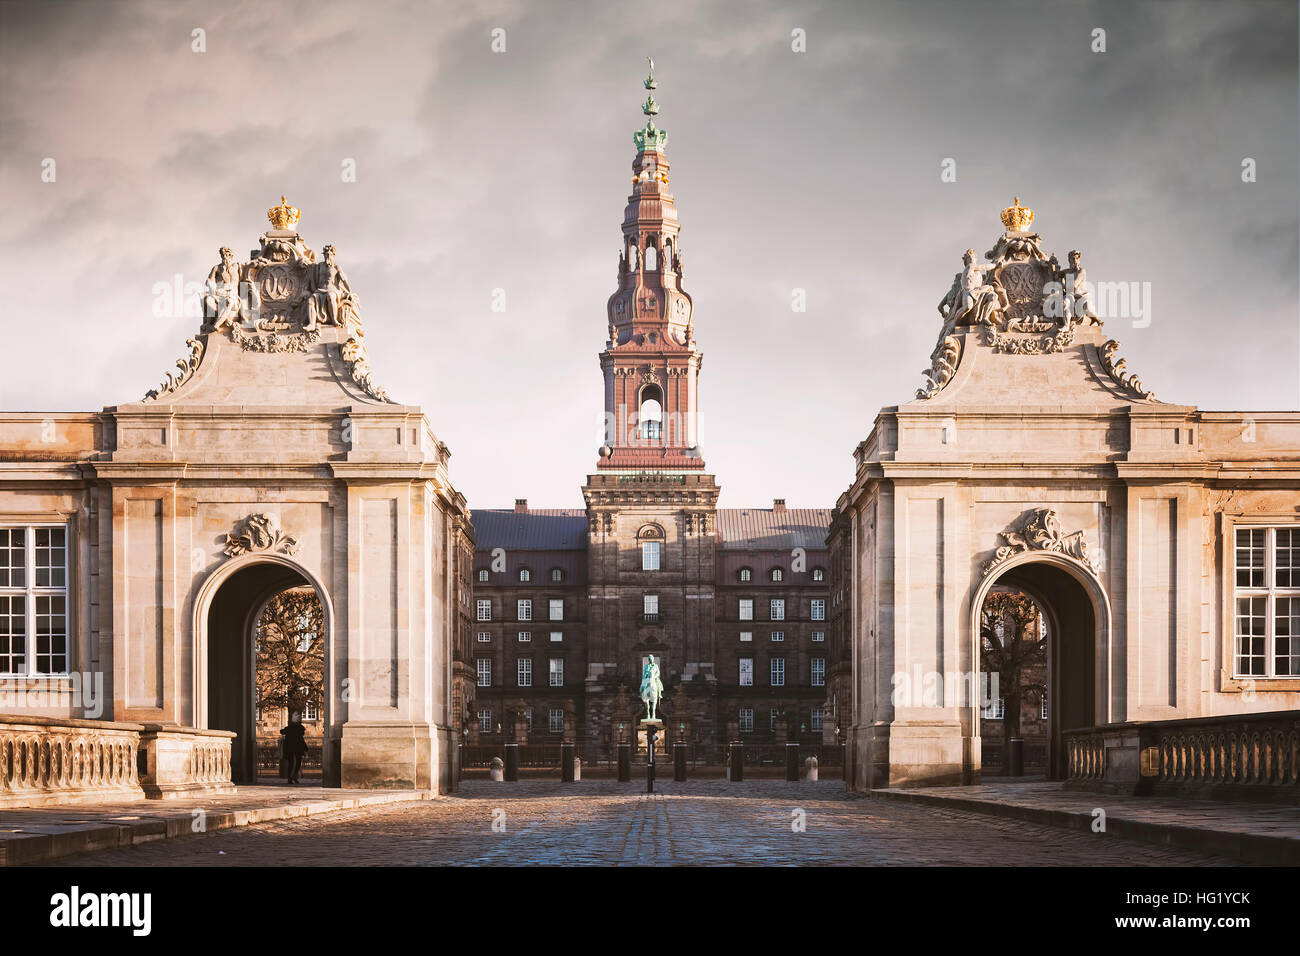 Immagine del grand entry al castello di Christiansborg a Copenaghen, in Danimarca. Foto Stock